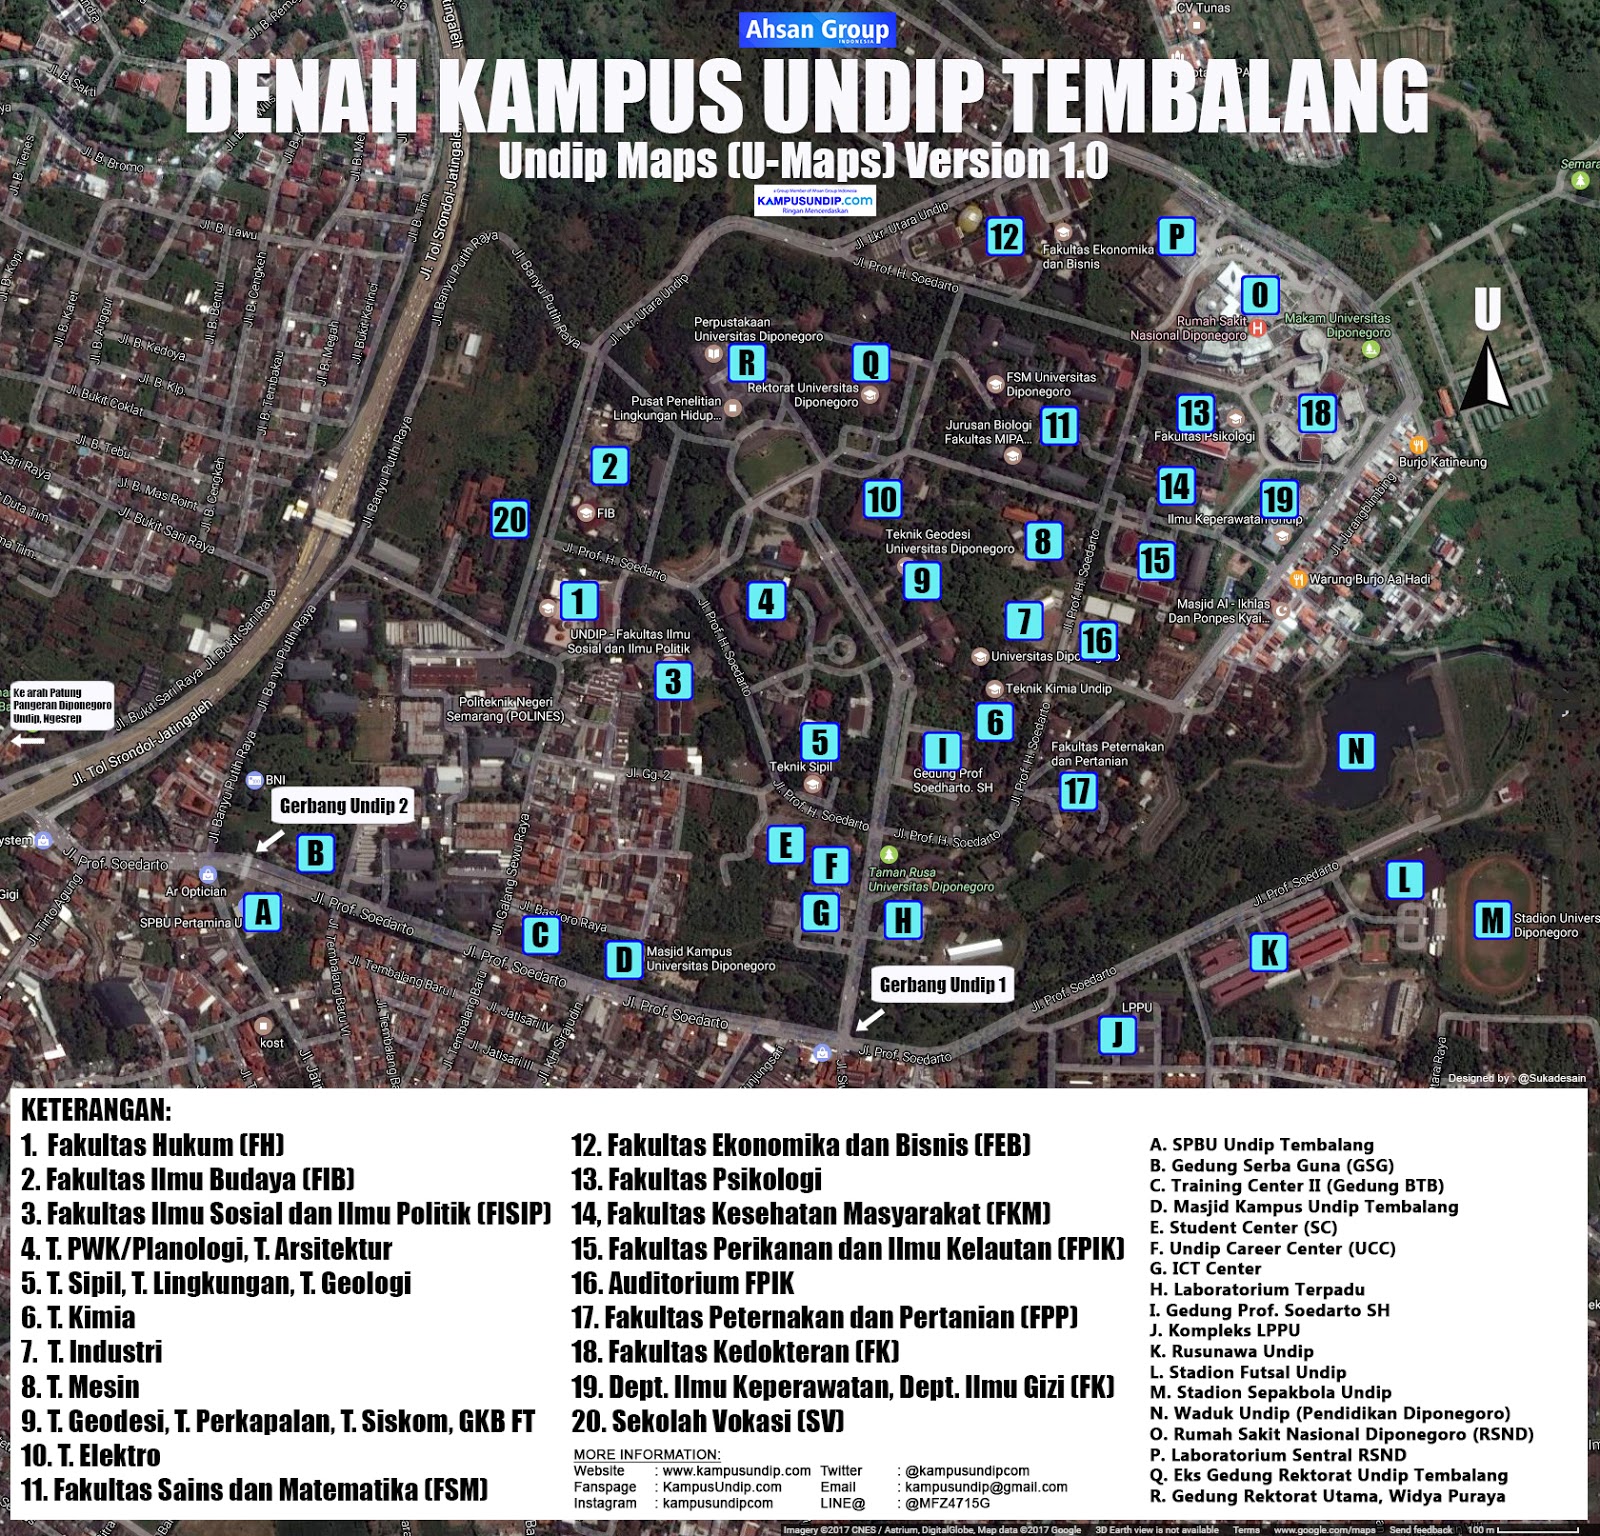 Bagi Anda yang ingin men ahui lokasi dan tempat tempat di Universitas Diponegoro atau peserta test